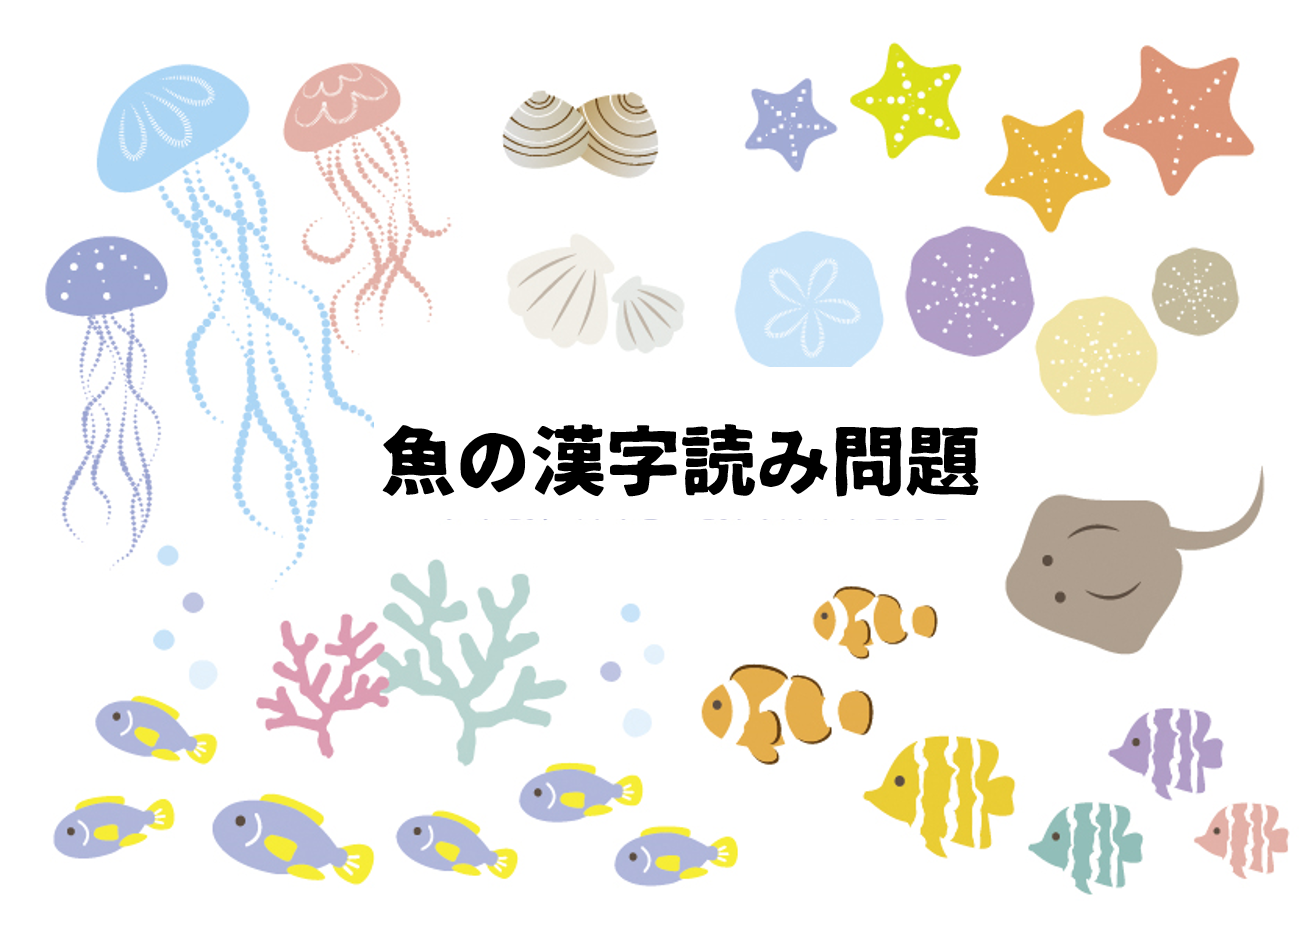 高齢者向け脳トレ 魚の漢字読みクイズ全30問 あなたは何問